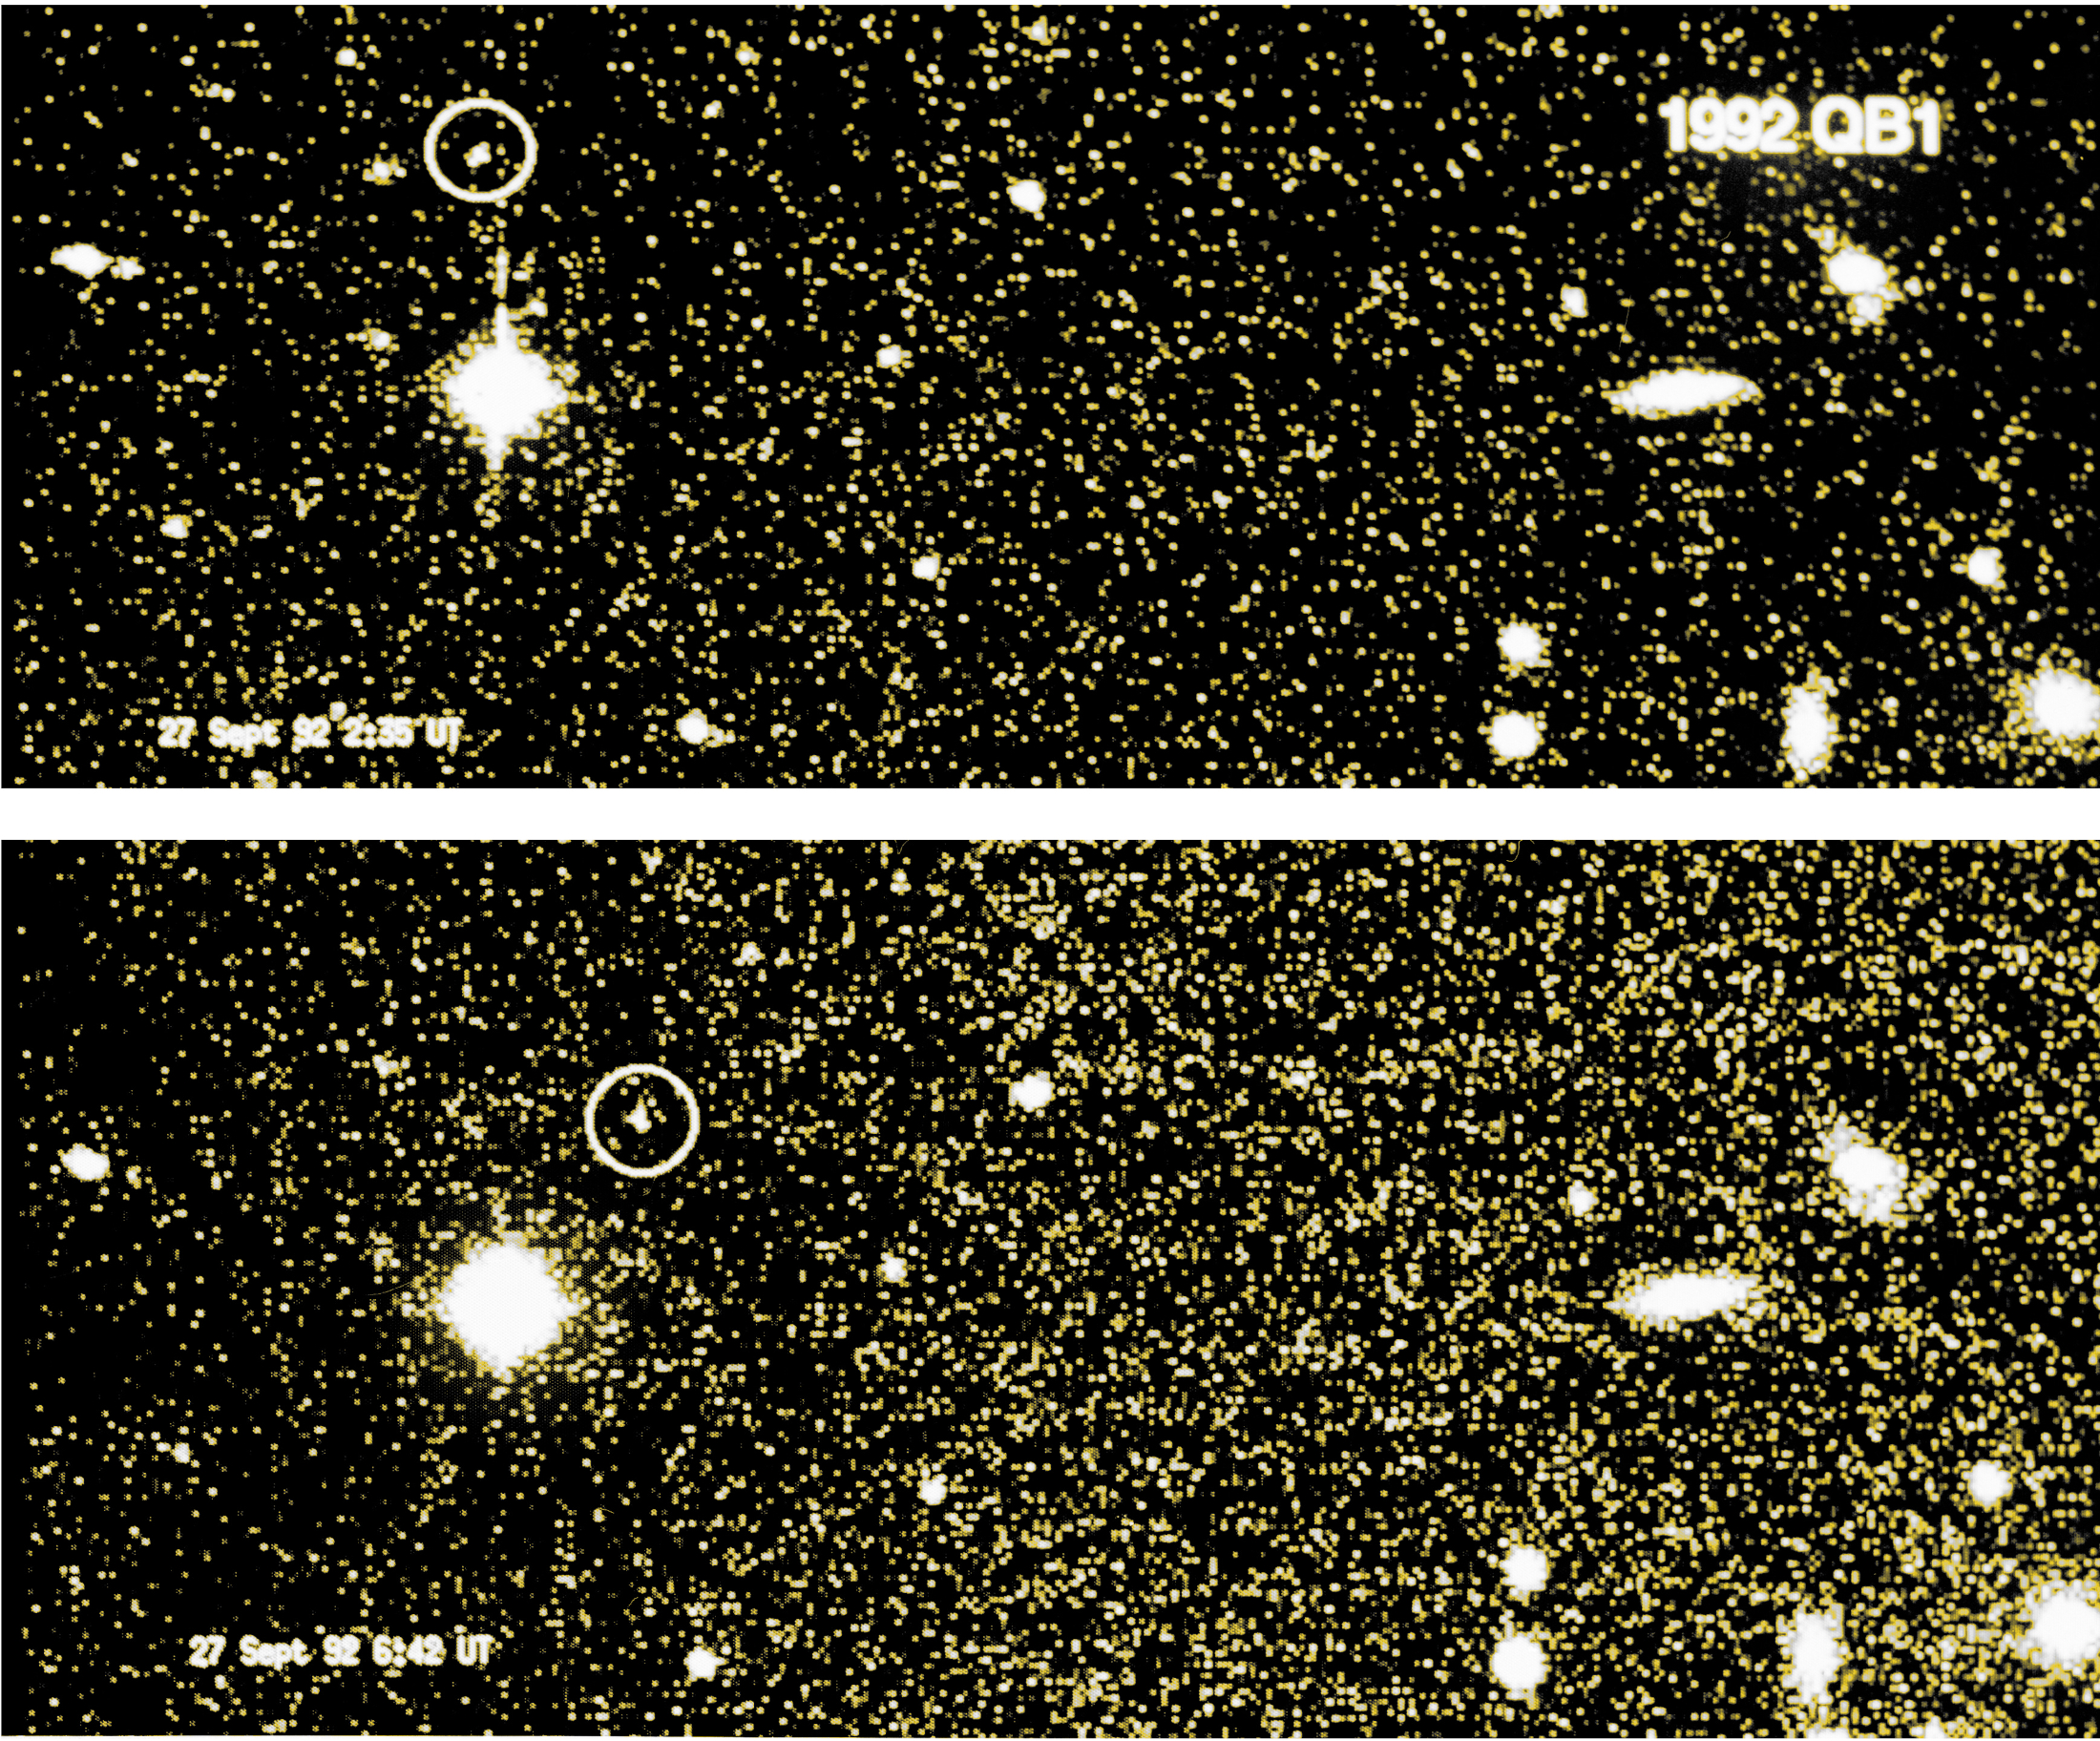 30 jaar ontdekking vanaf 1992 QB1 – het begin van het einde van Pluto